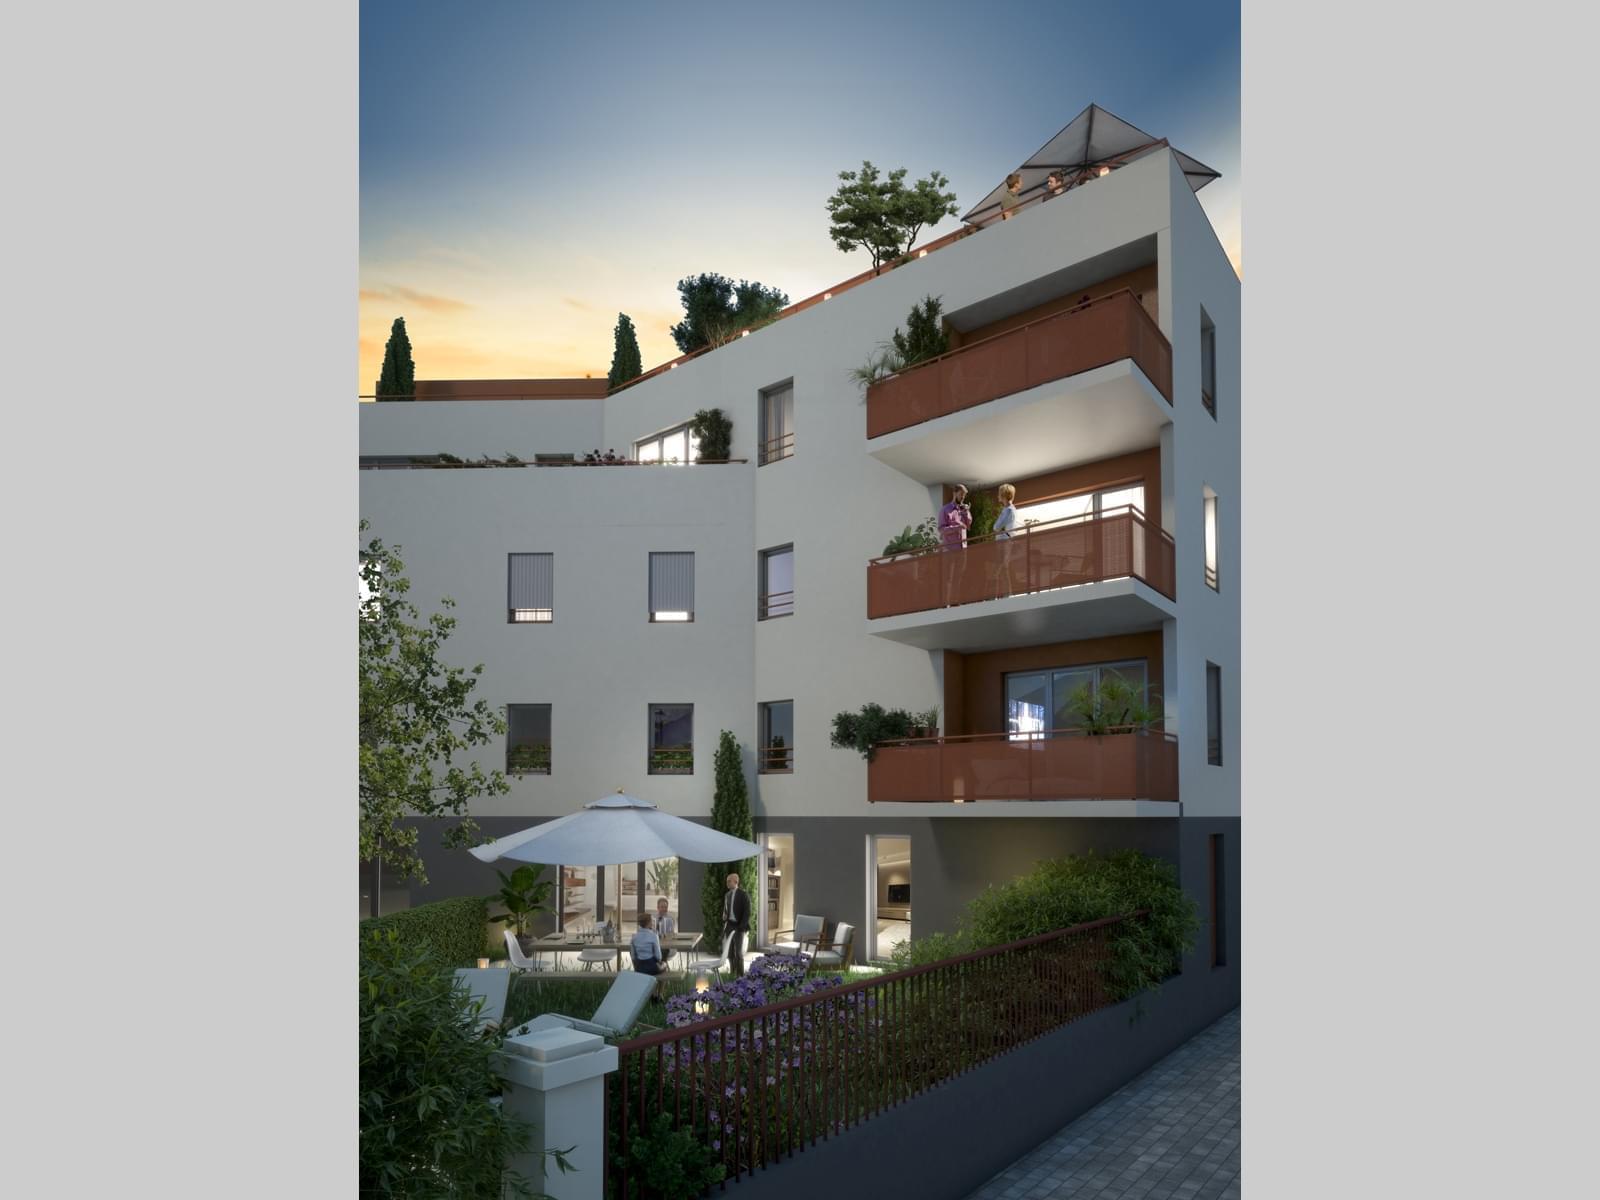 Achat logement neuf   livrable 2022 quartier Flachet 